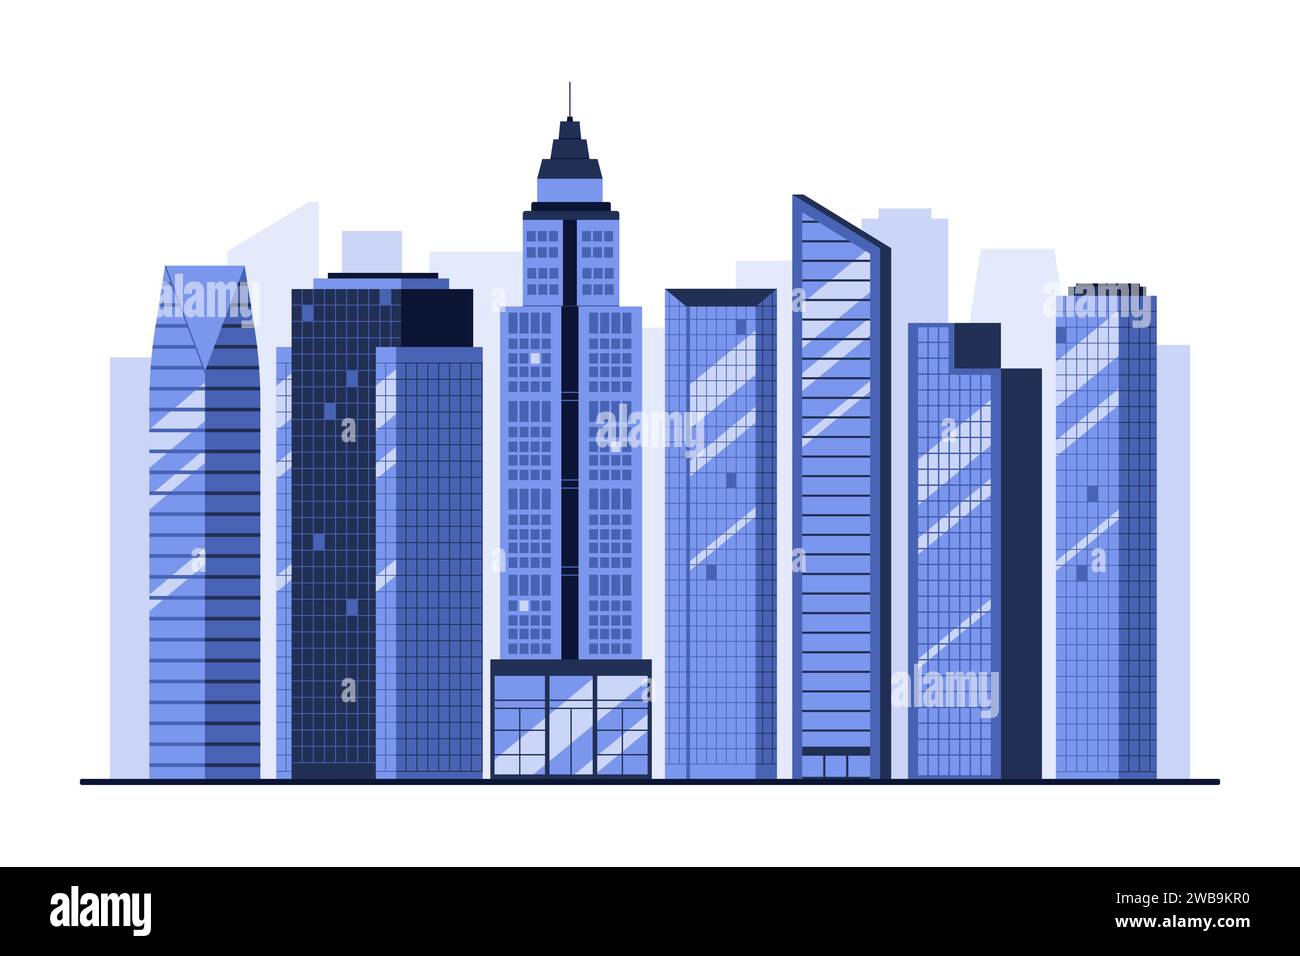 Skyline de la ville avec des immeubles de bureaux bleus et des gratte-ciel. Paysage urbain avec de grandes tours d'entreprise commerciales du centre-ville et de nouvelles maisons de condo modernes, vue panoramique urbain illustration vectorielle de dessin animé Illustration de Vecteur